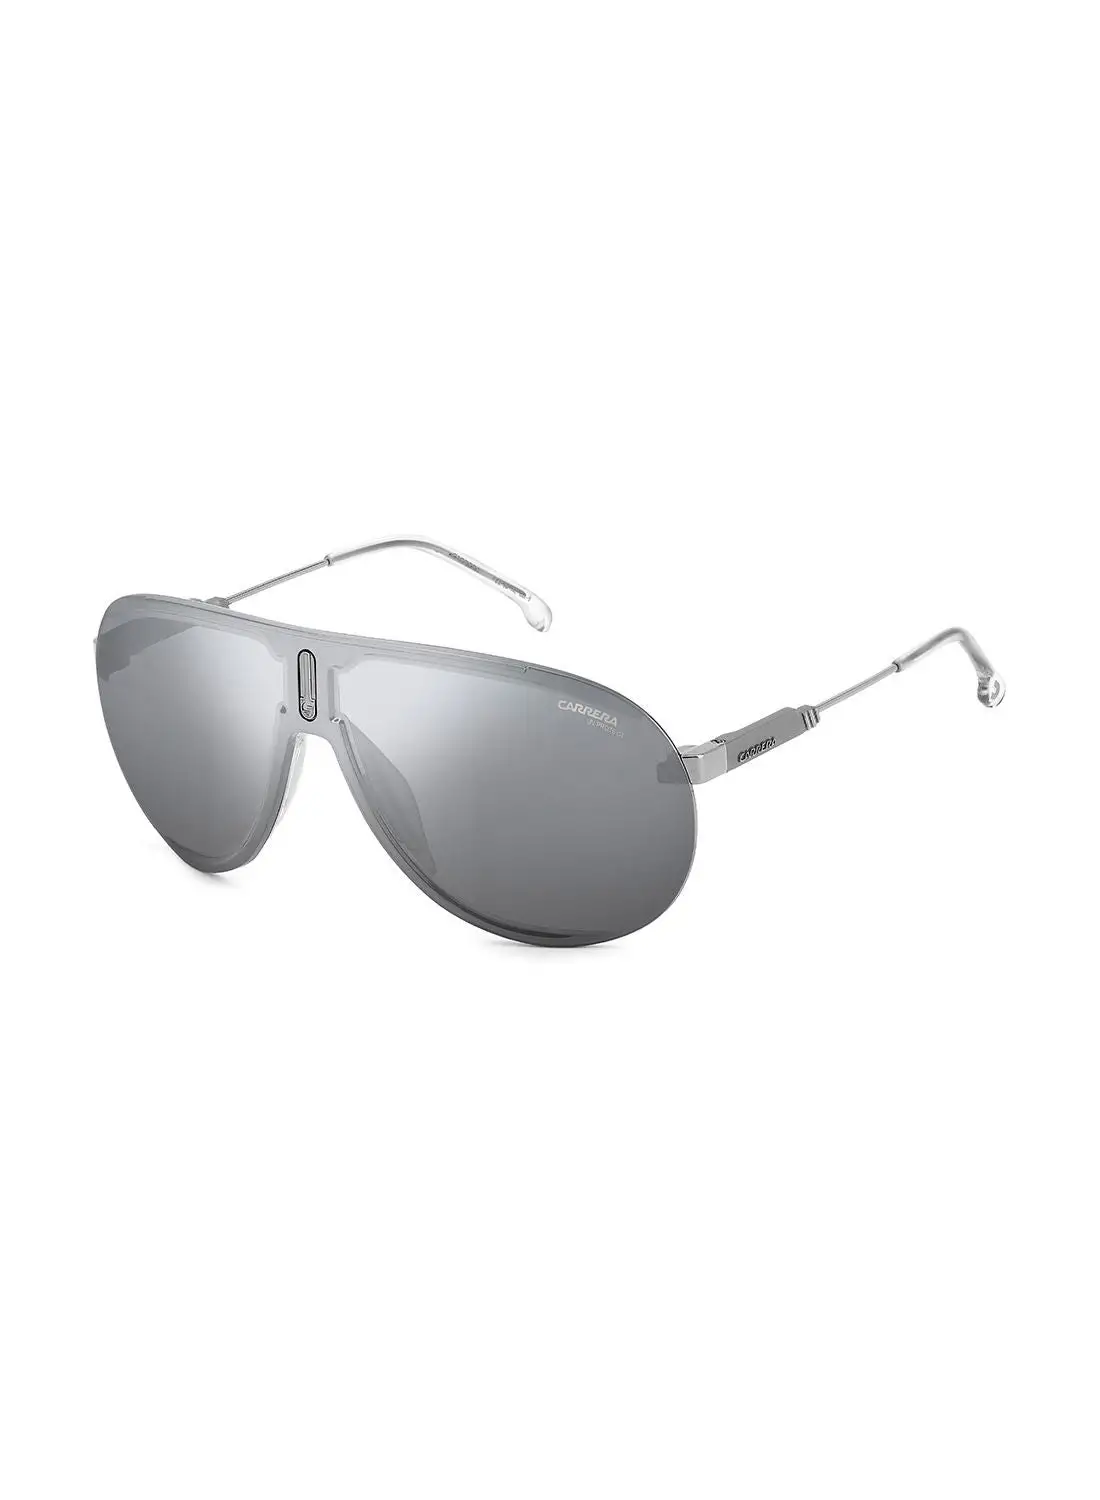 نظارة شمسية بايلوت للحماية من الأشعة فوق البنفسجية للجنسين من كاريرا - سوبرشامبيون روثينيوم 99 - مقاس العدسة: 99 ملم